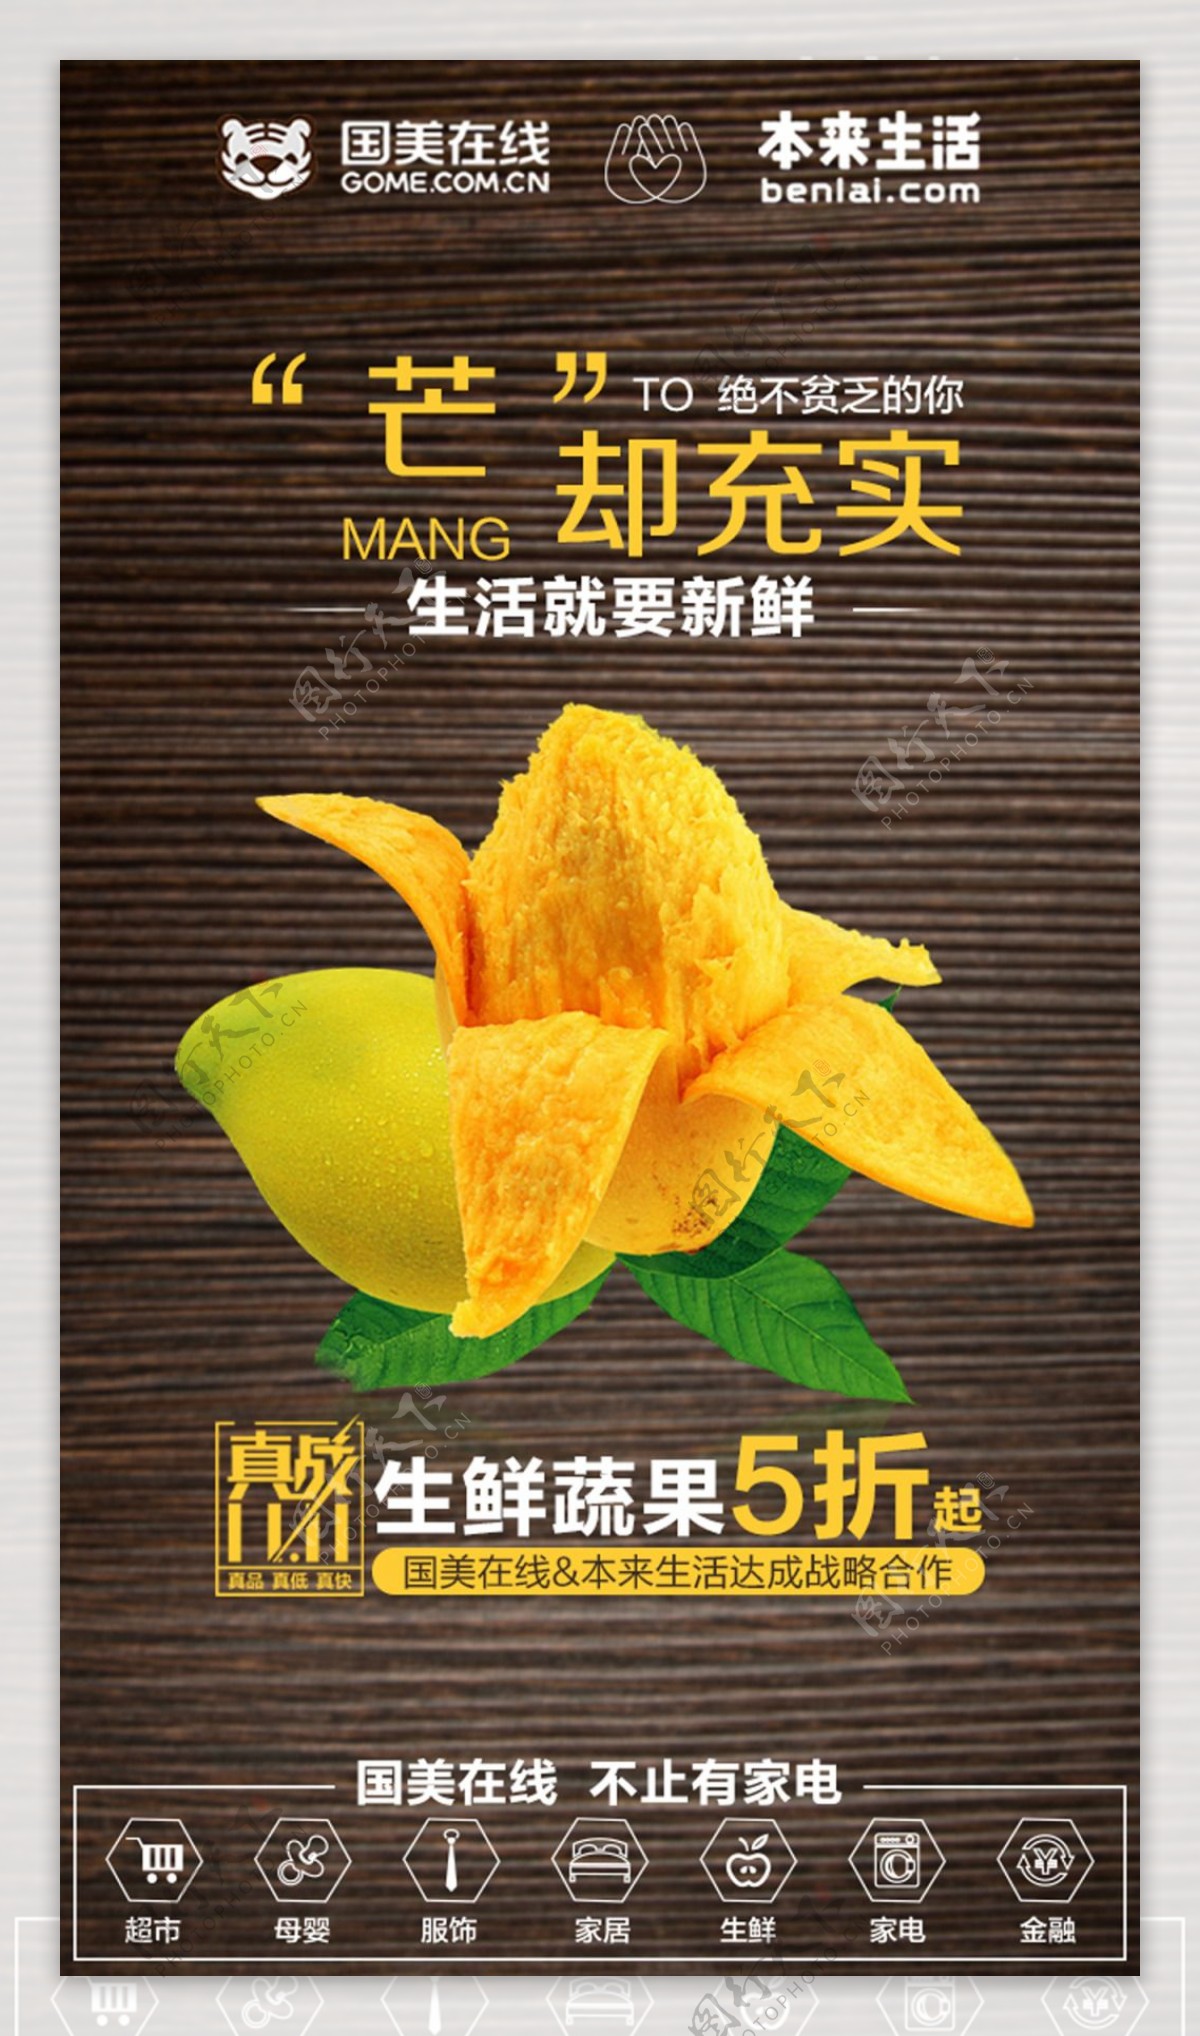 生鲜蔬果芒果海报